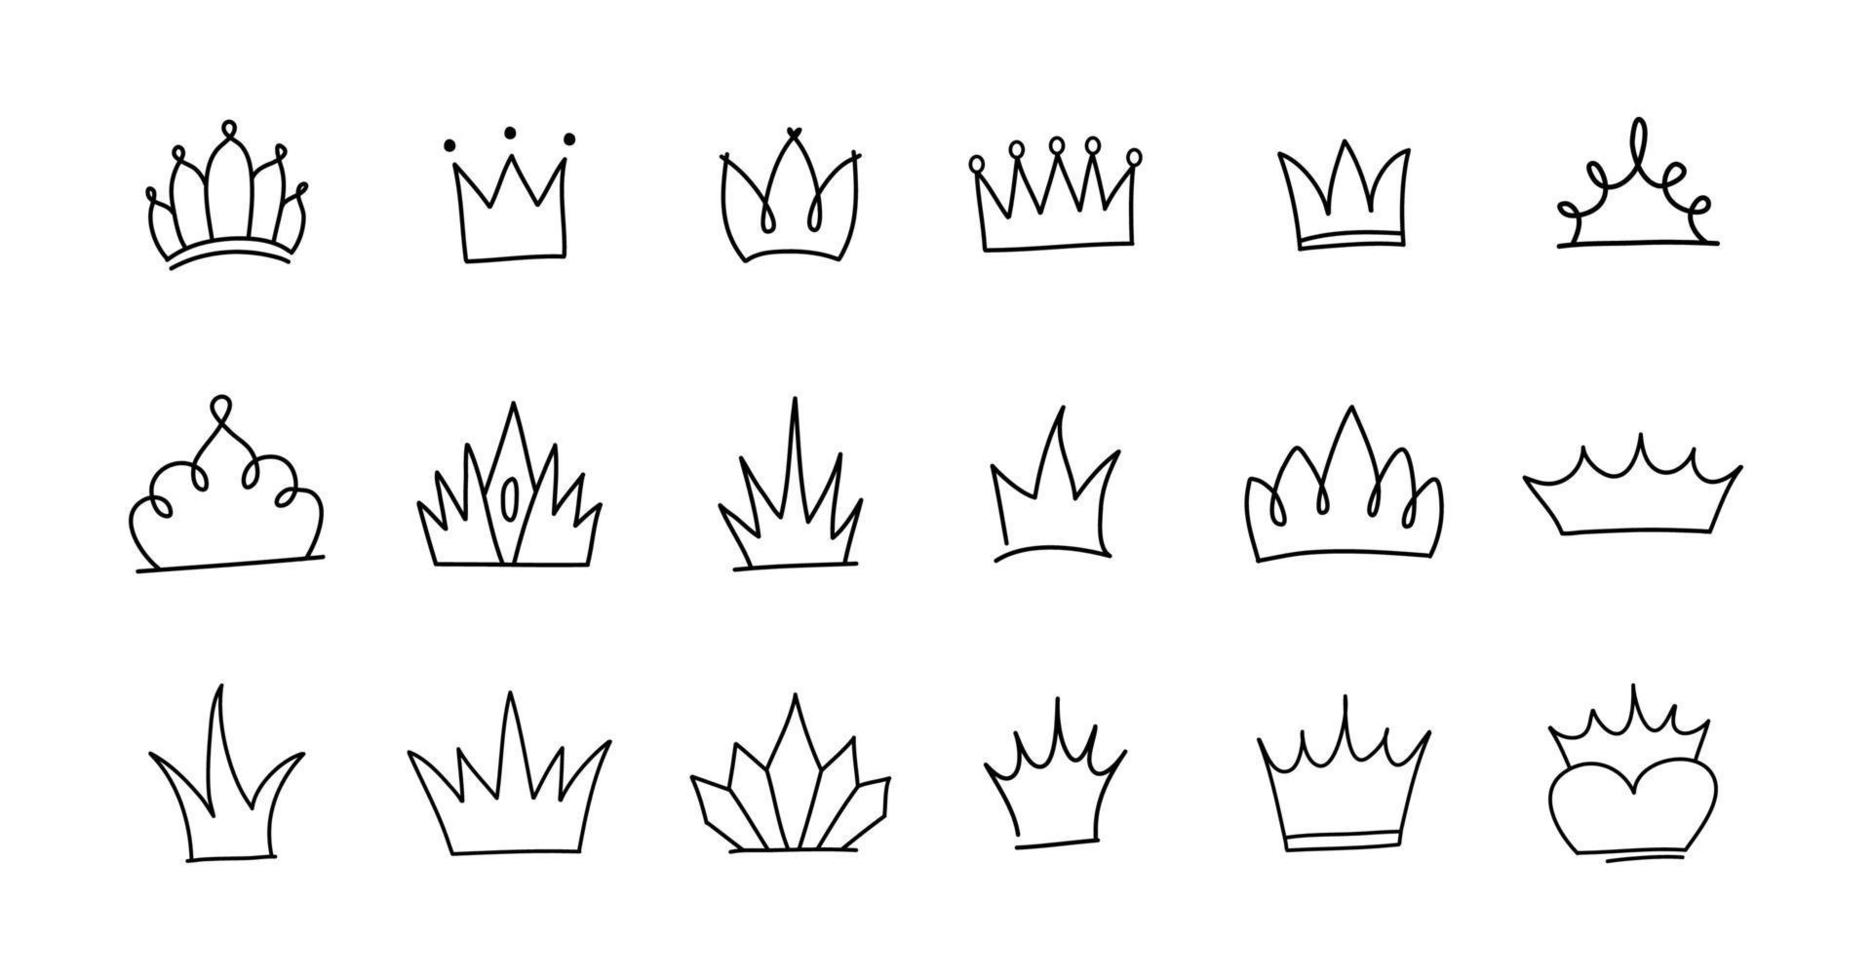 carino doodle set di elementi della corona della principessa. illustrazione vettoriale disegnata a mano. compleanno, elementi di matrimonio di capodanno per biglietti di auguri, poster, decorazioni per adesivi.